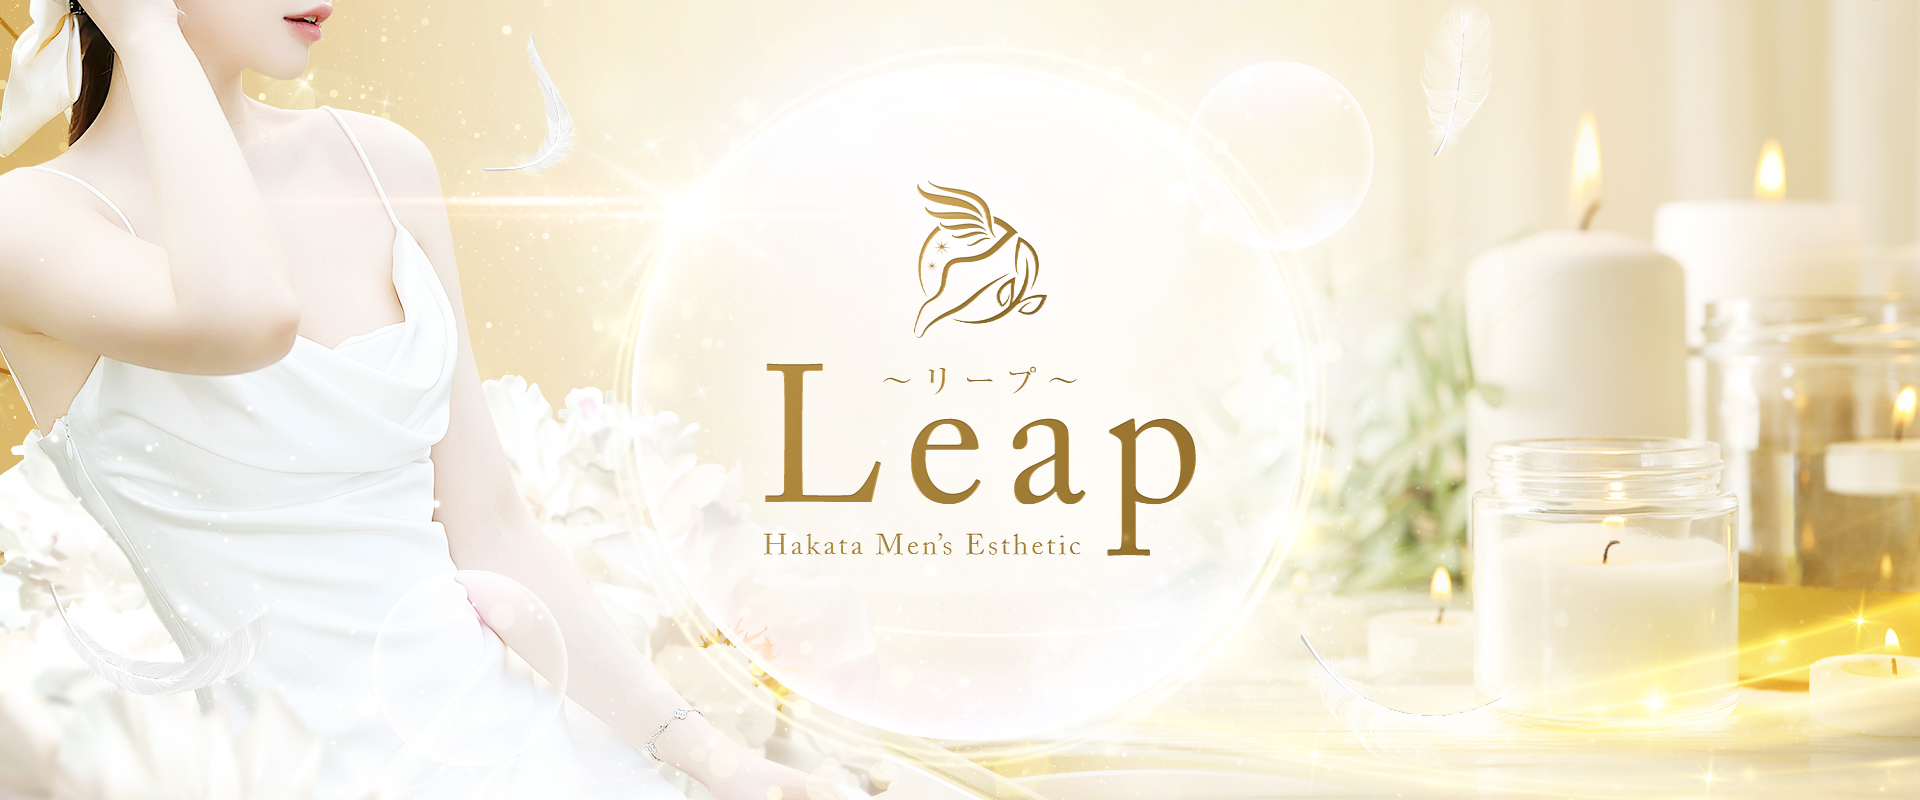 福岡 博多メンズエステ『Leap〜リープ〜』